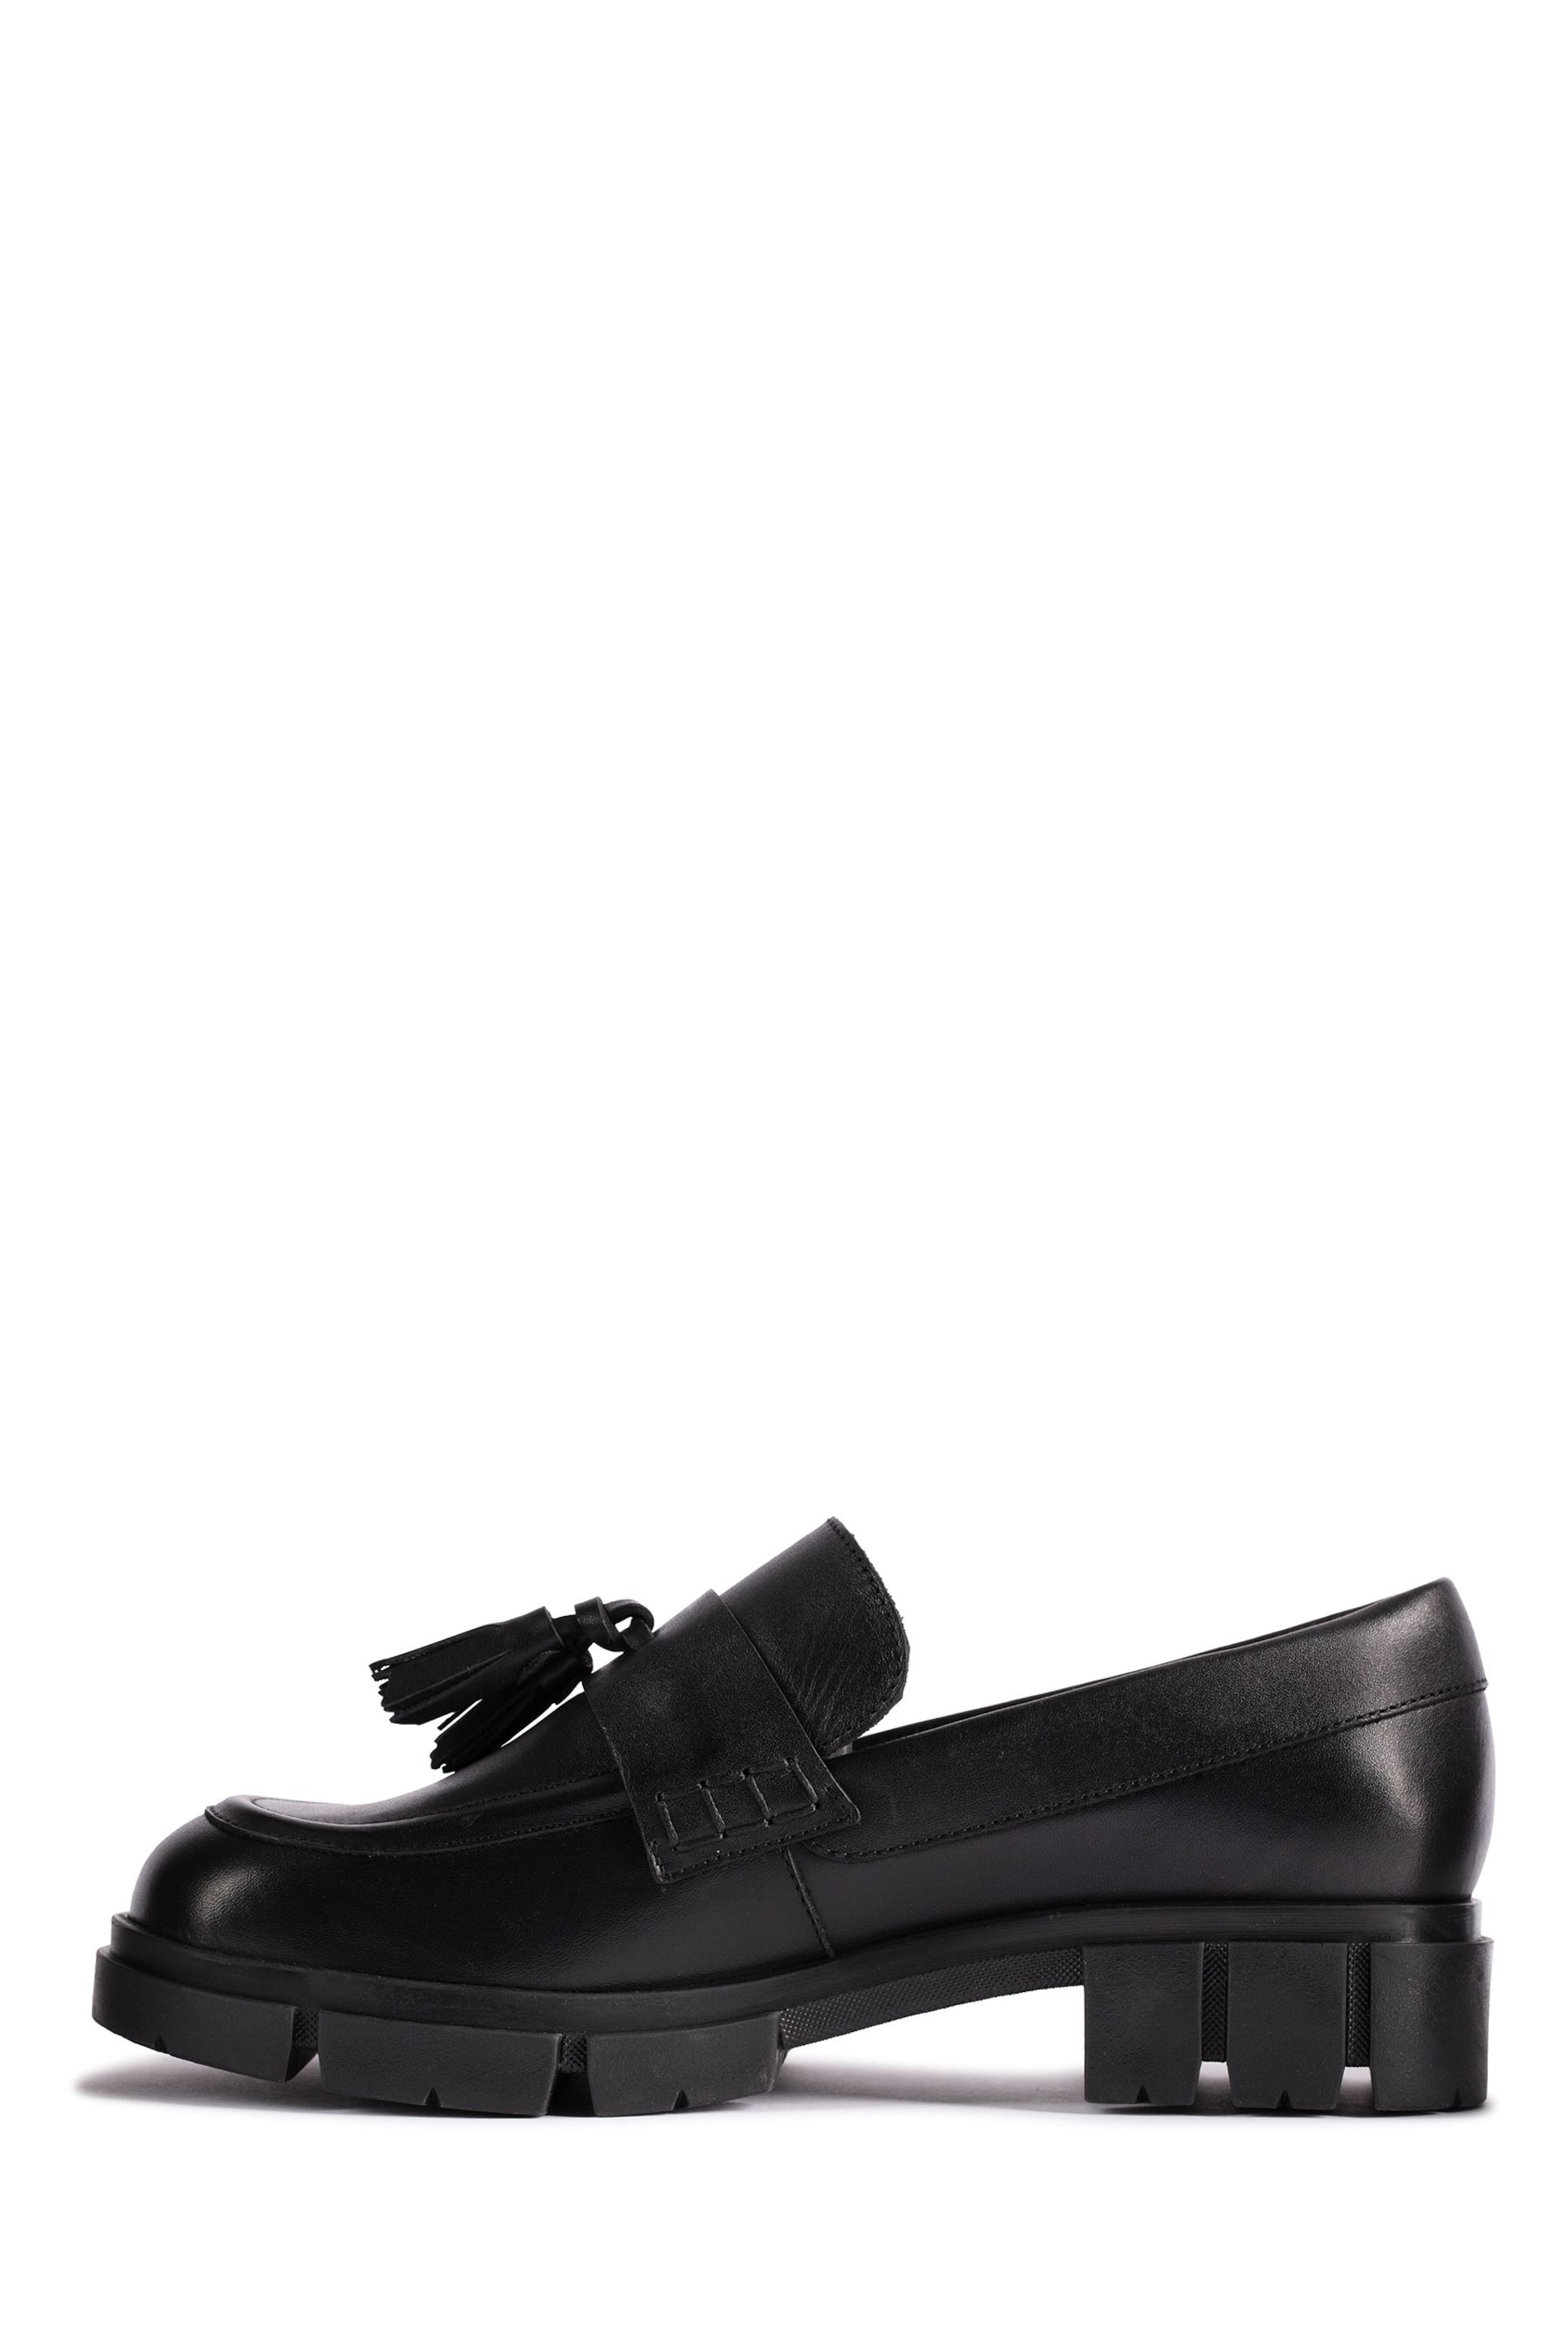 Clarks Black Teala Loafer Shoes - Image 2 of 7